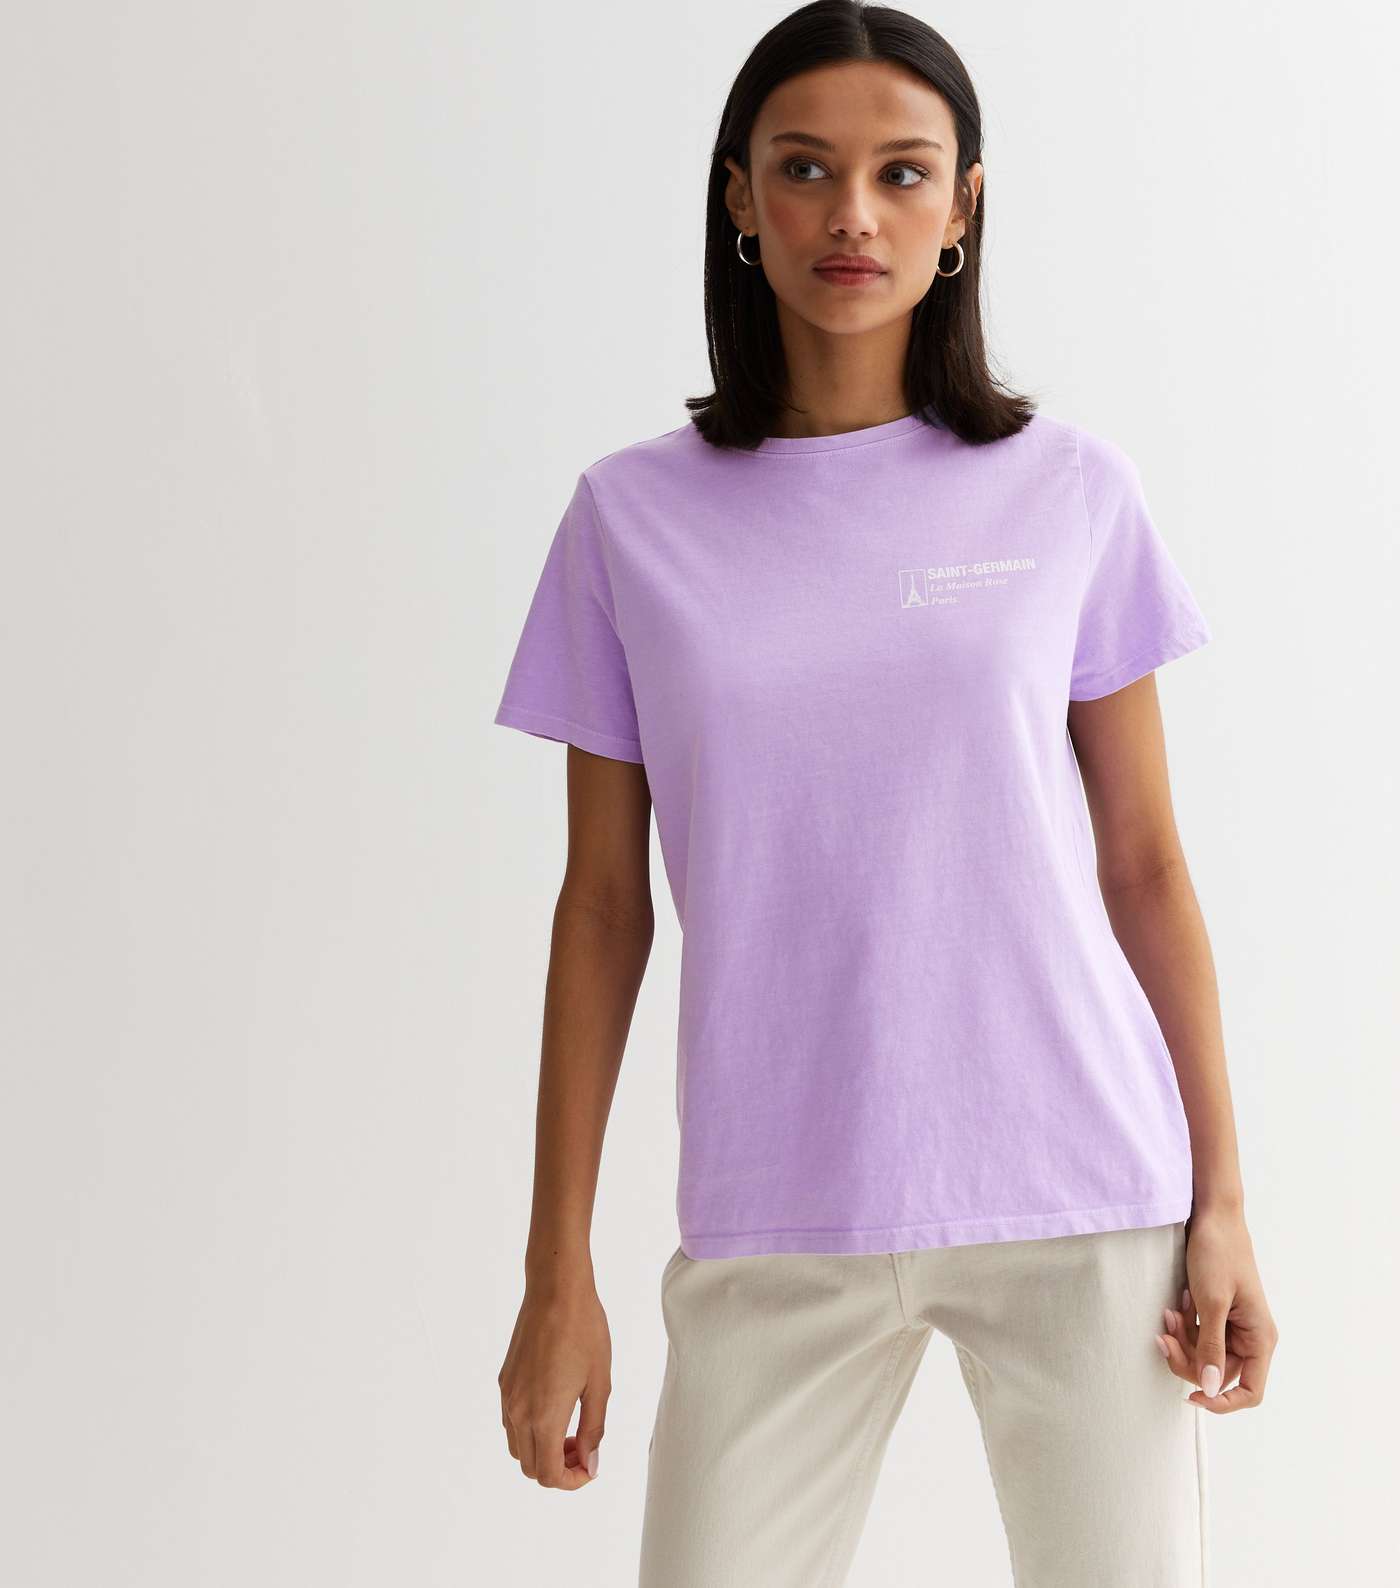 Lilac Saint Germain Pocket Logo T-Shirt Image 2